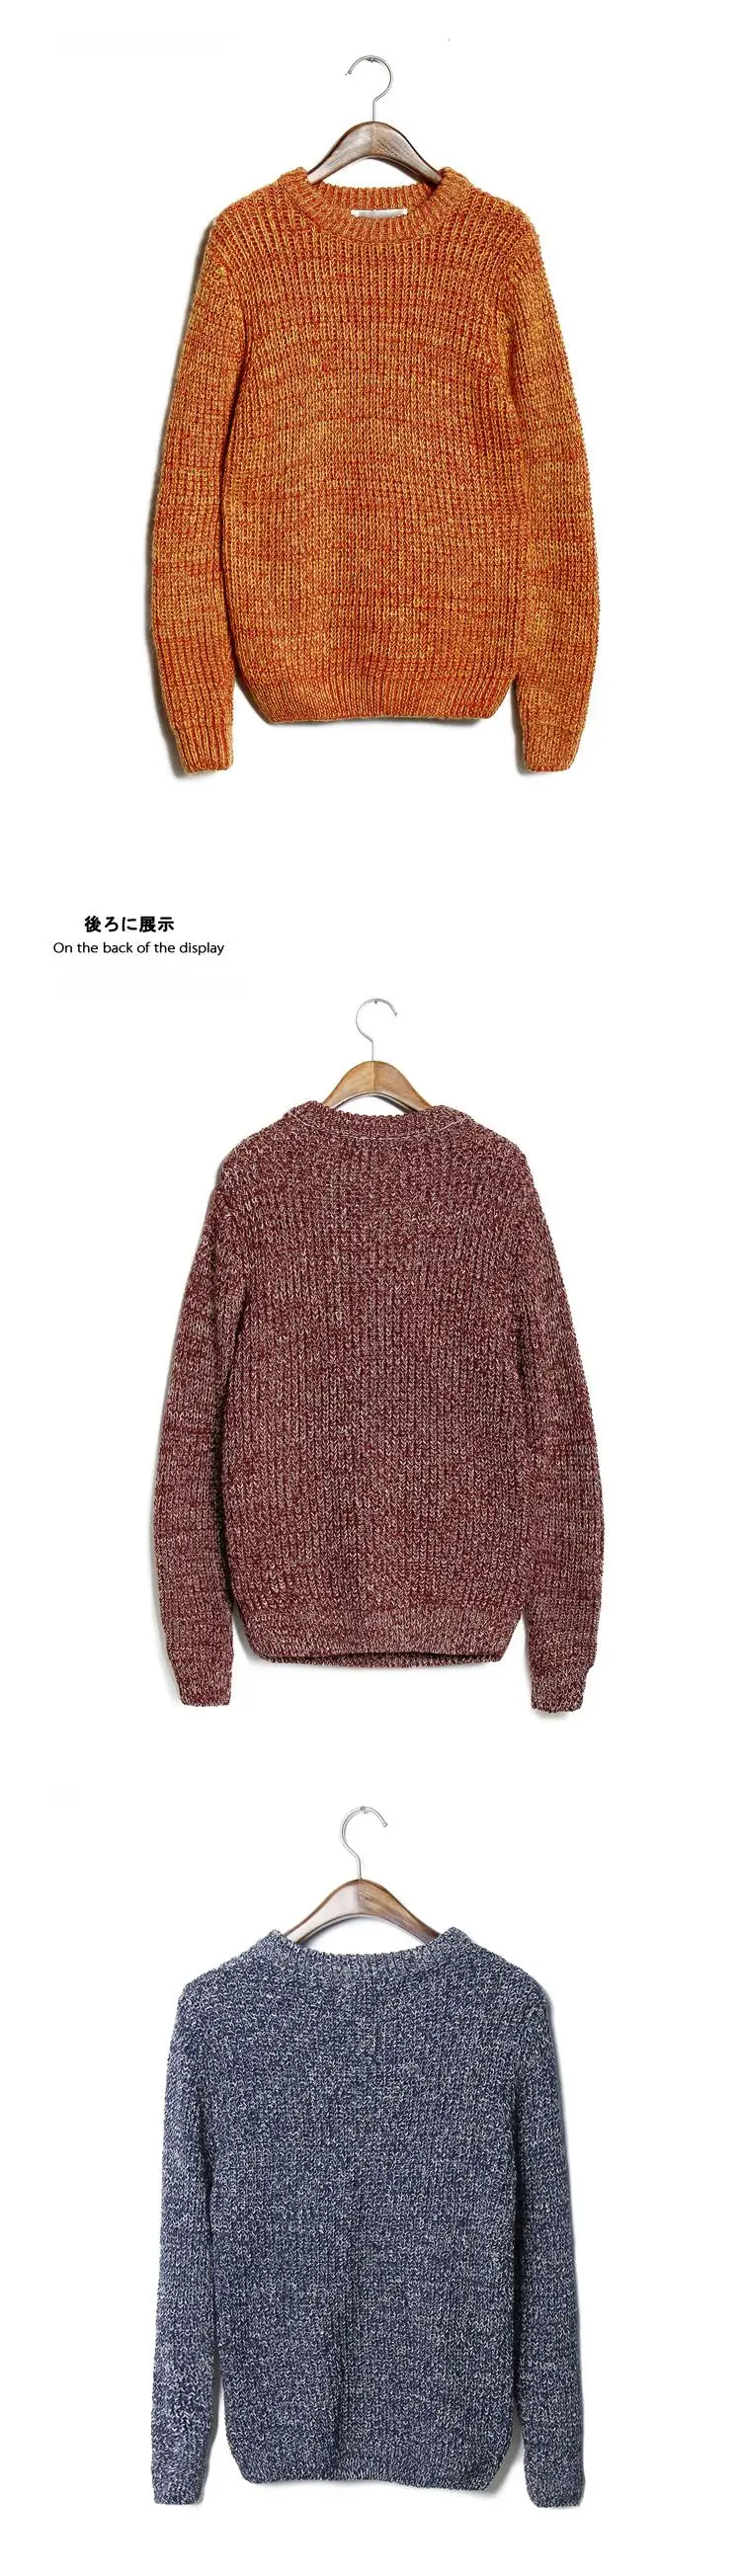 Горячее предложение Стиль Для мужчин теплый флис свитер зима-осень Для мужчин бренд 10 Цвета Slim Fit Свитеры для женщин Трикотаж пуловер Homme